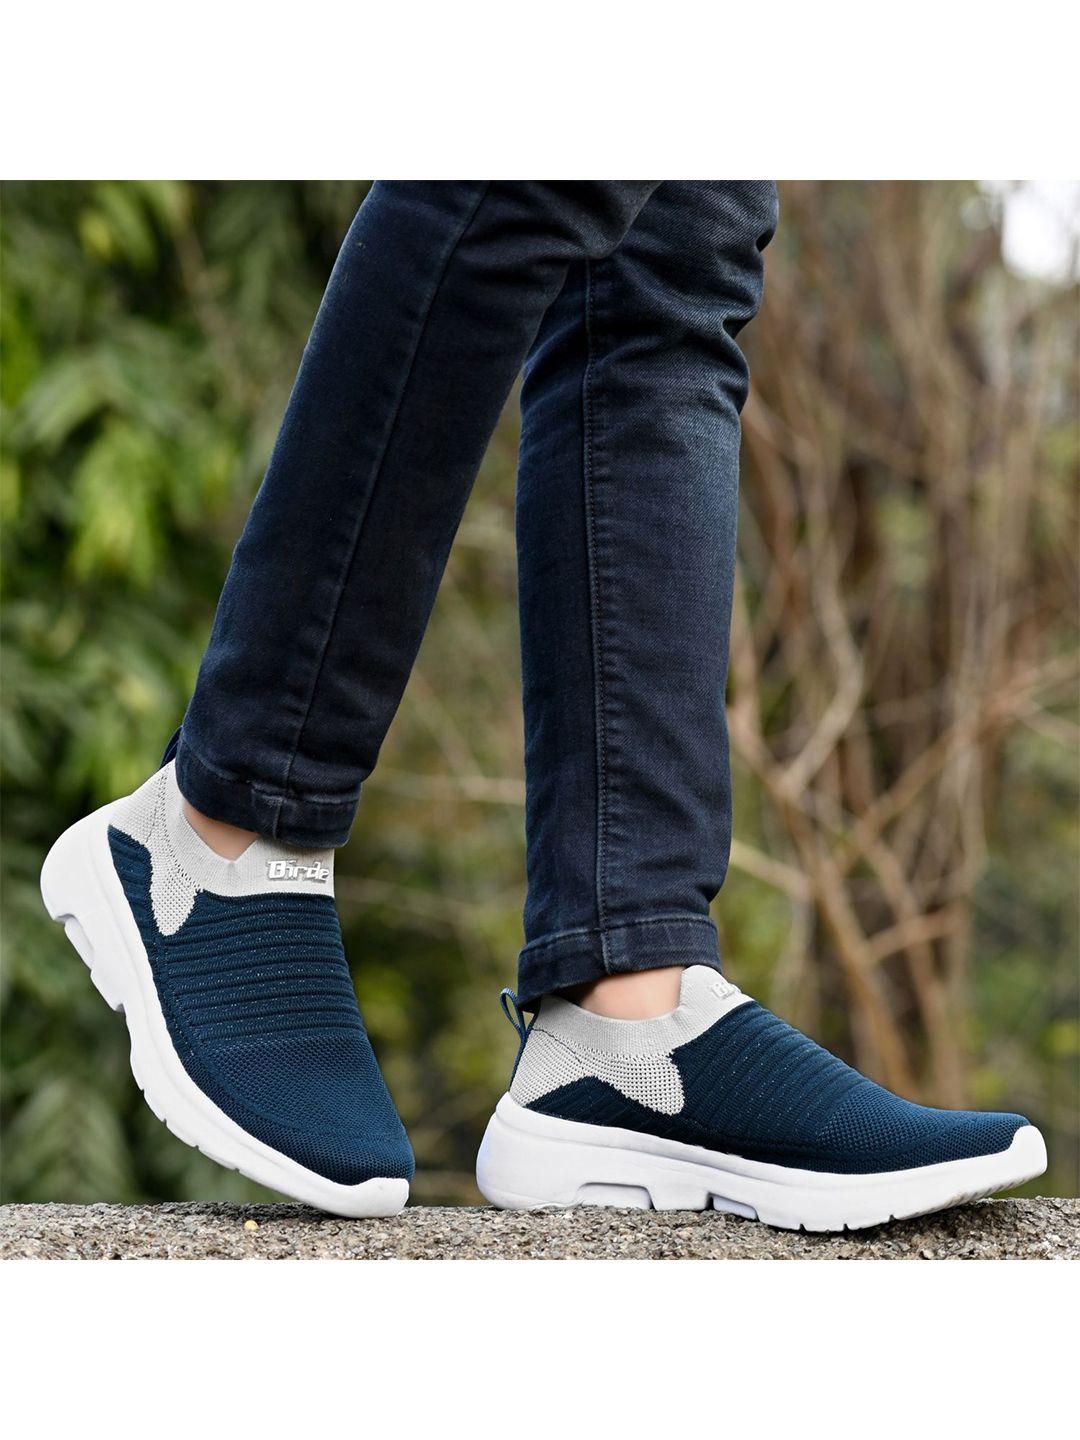 birde-men-blue-woven-design-sneakers